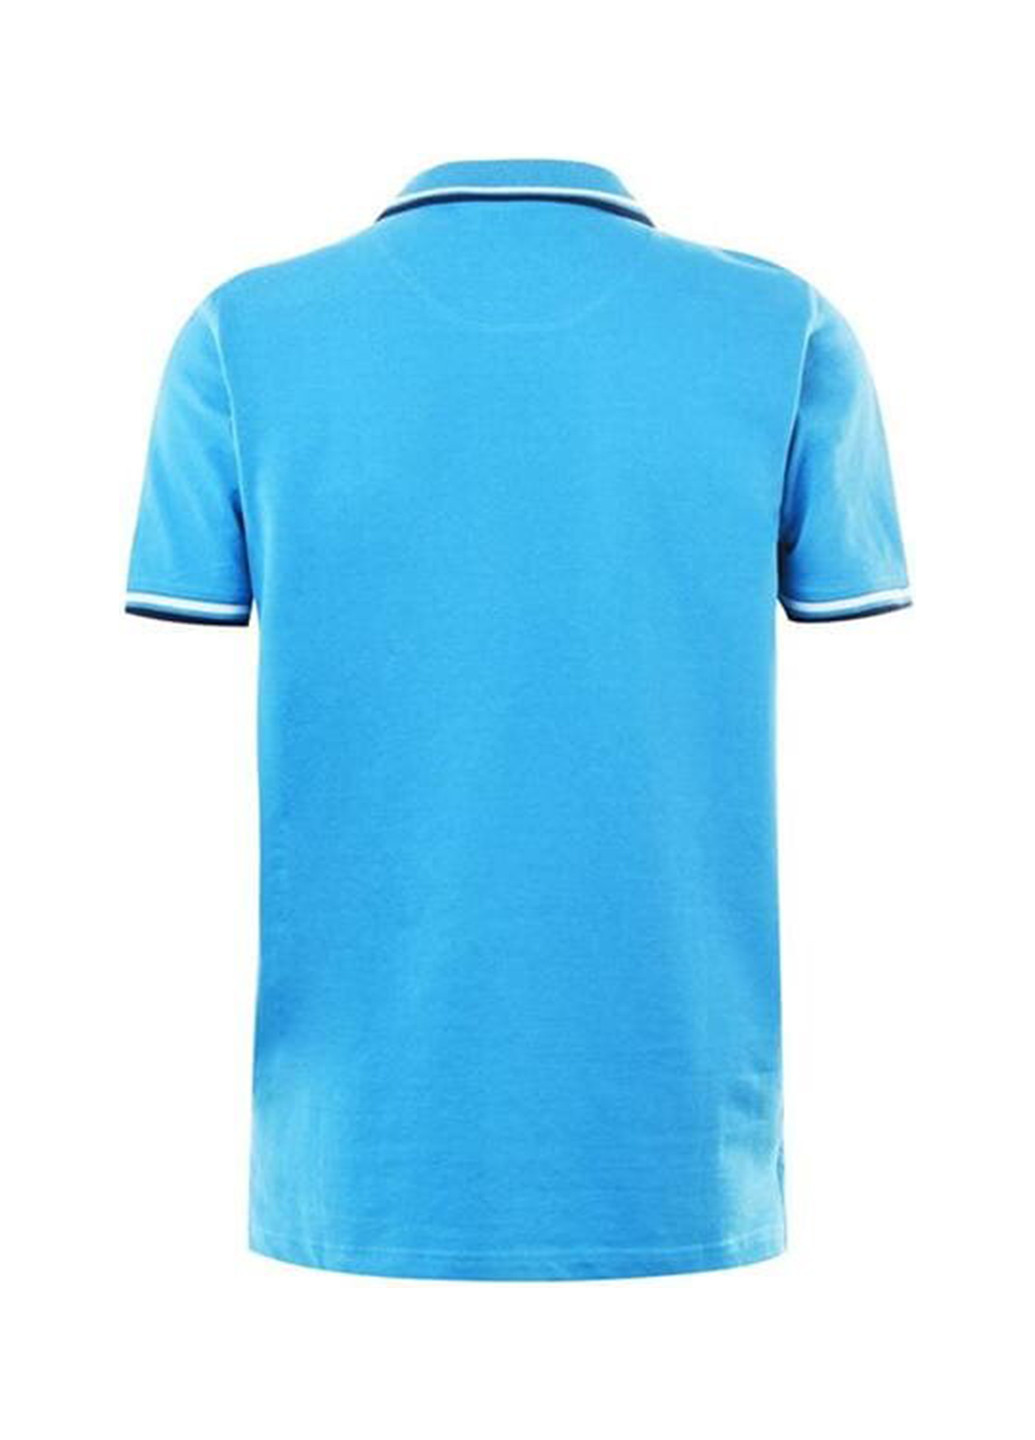 Голубой футболка-поло для мужчин Pierre Cardin однотонная